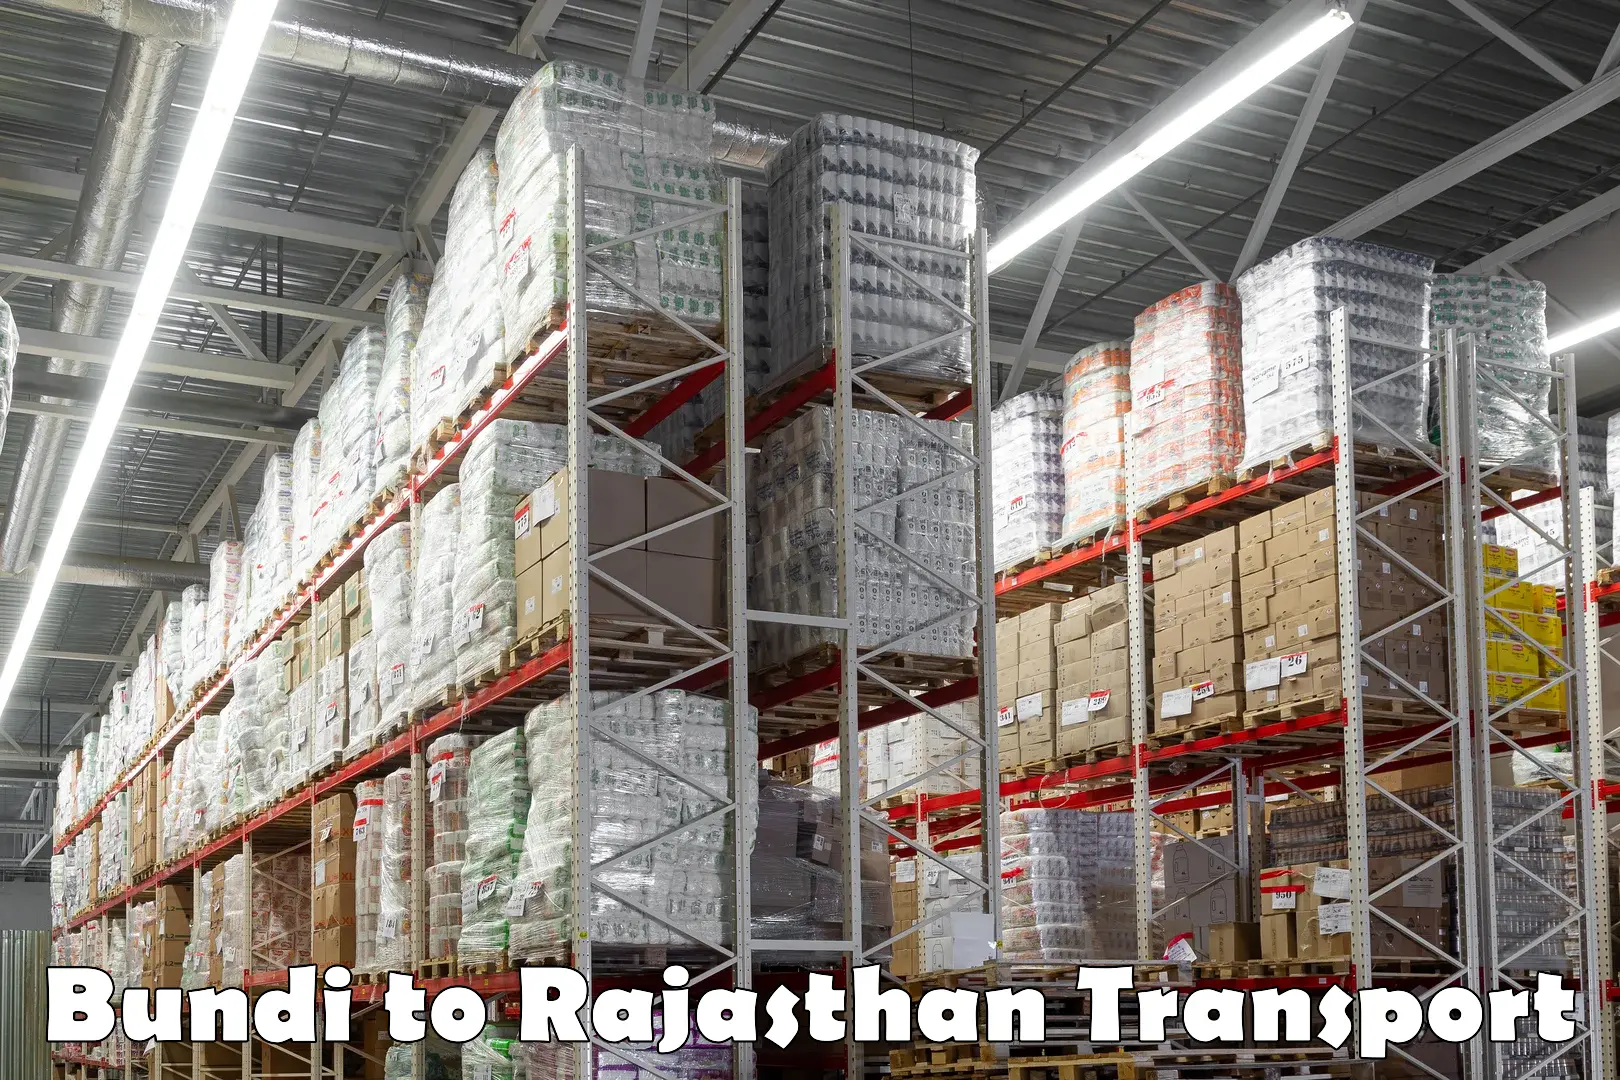 Furniture transport service Bundi to Rajasthan